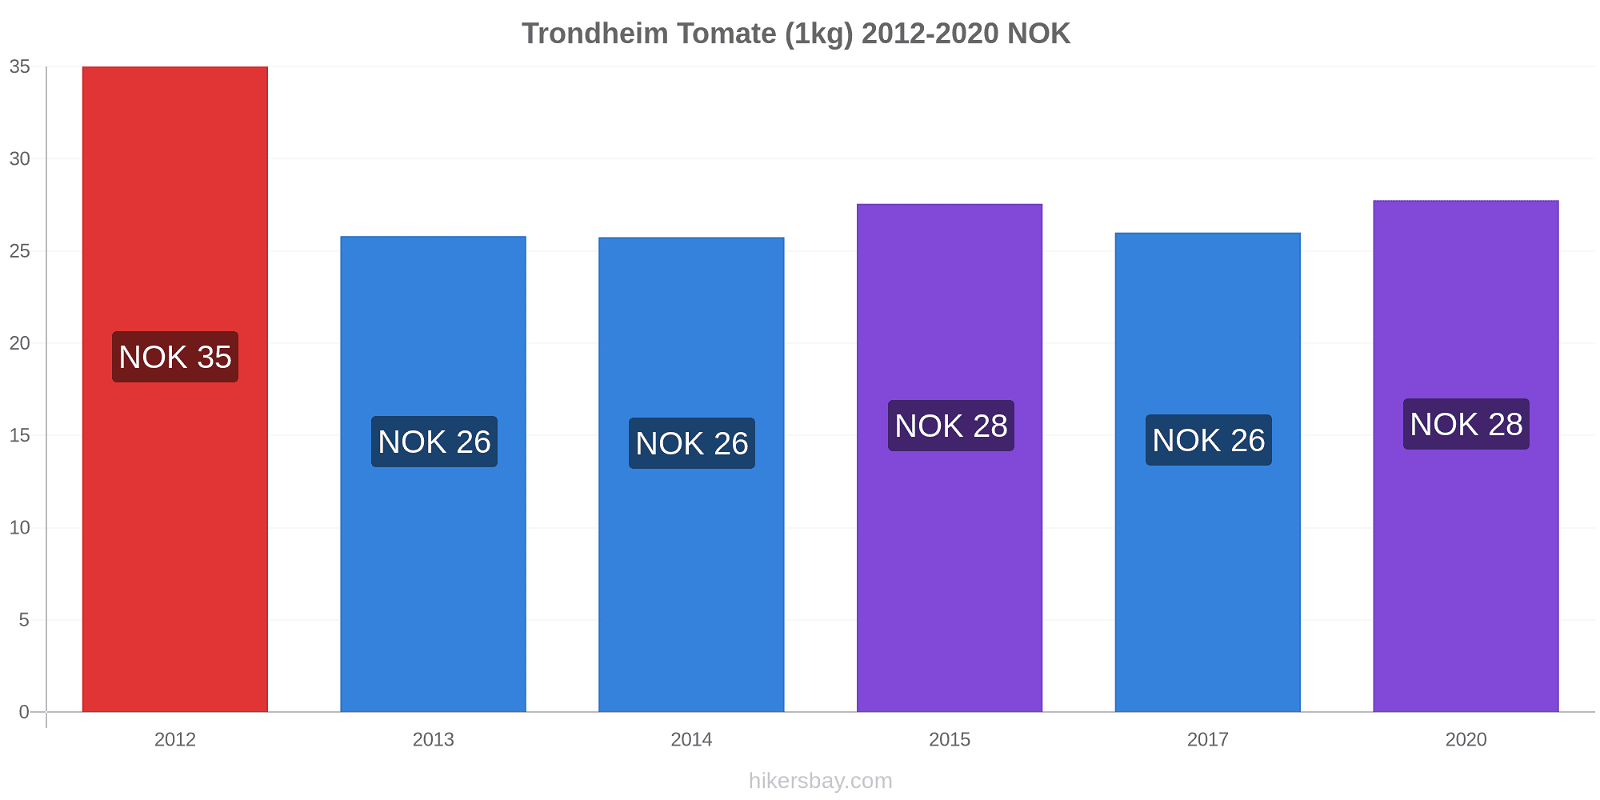 Trondheim variação de preço Tomate (1kg) hikersbay.com